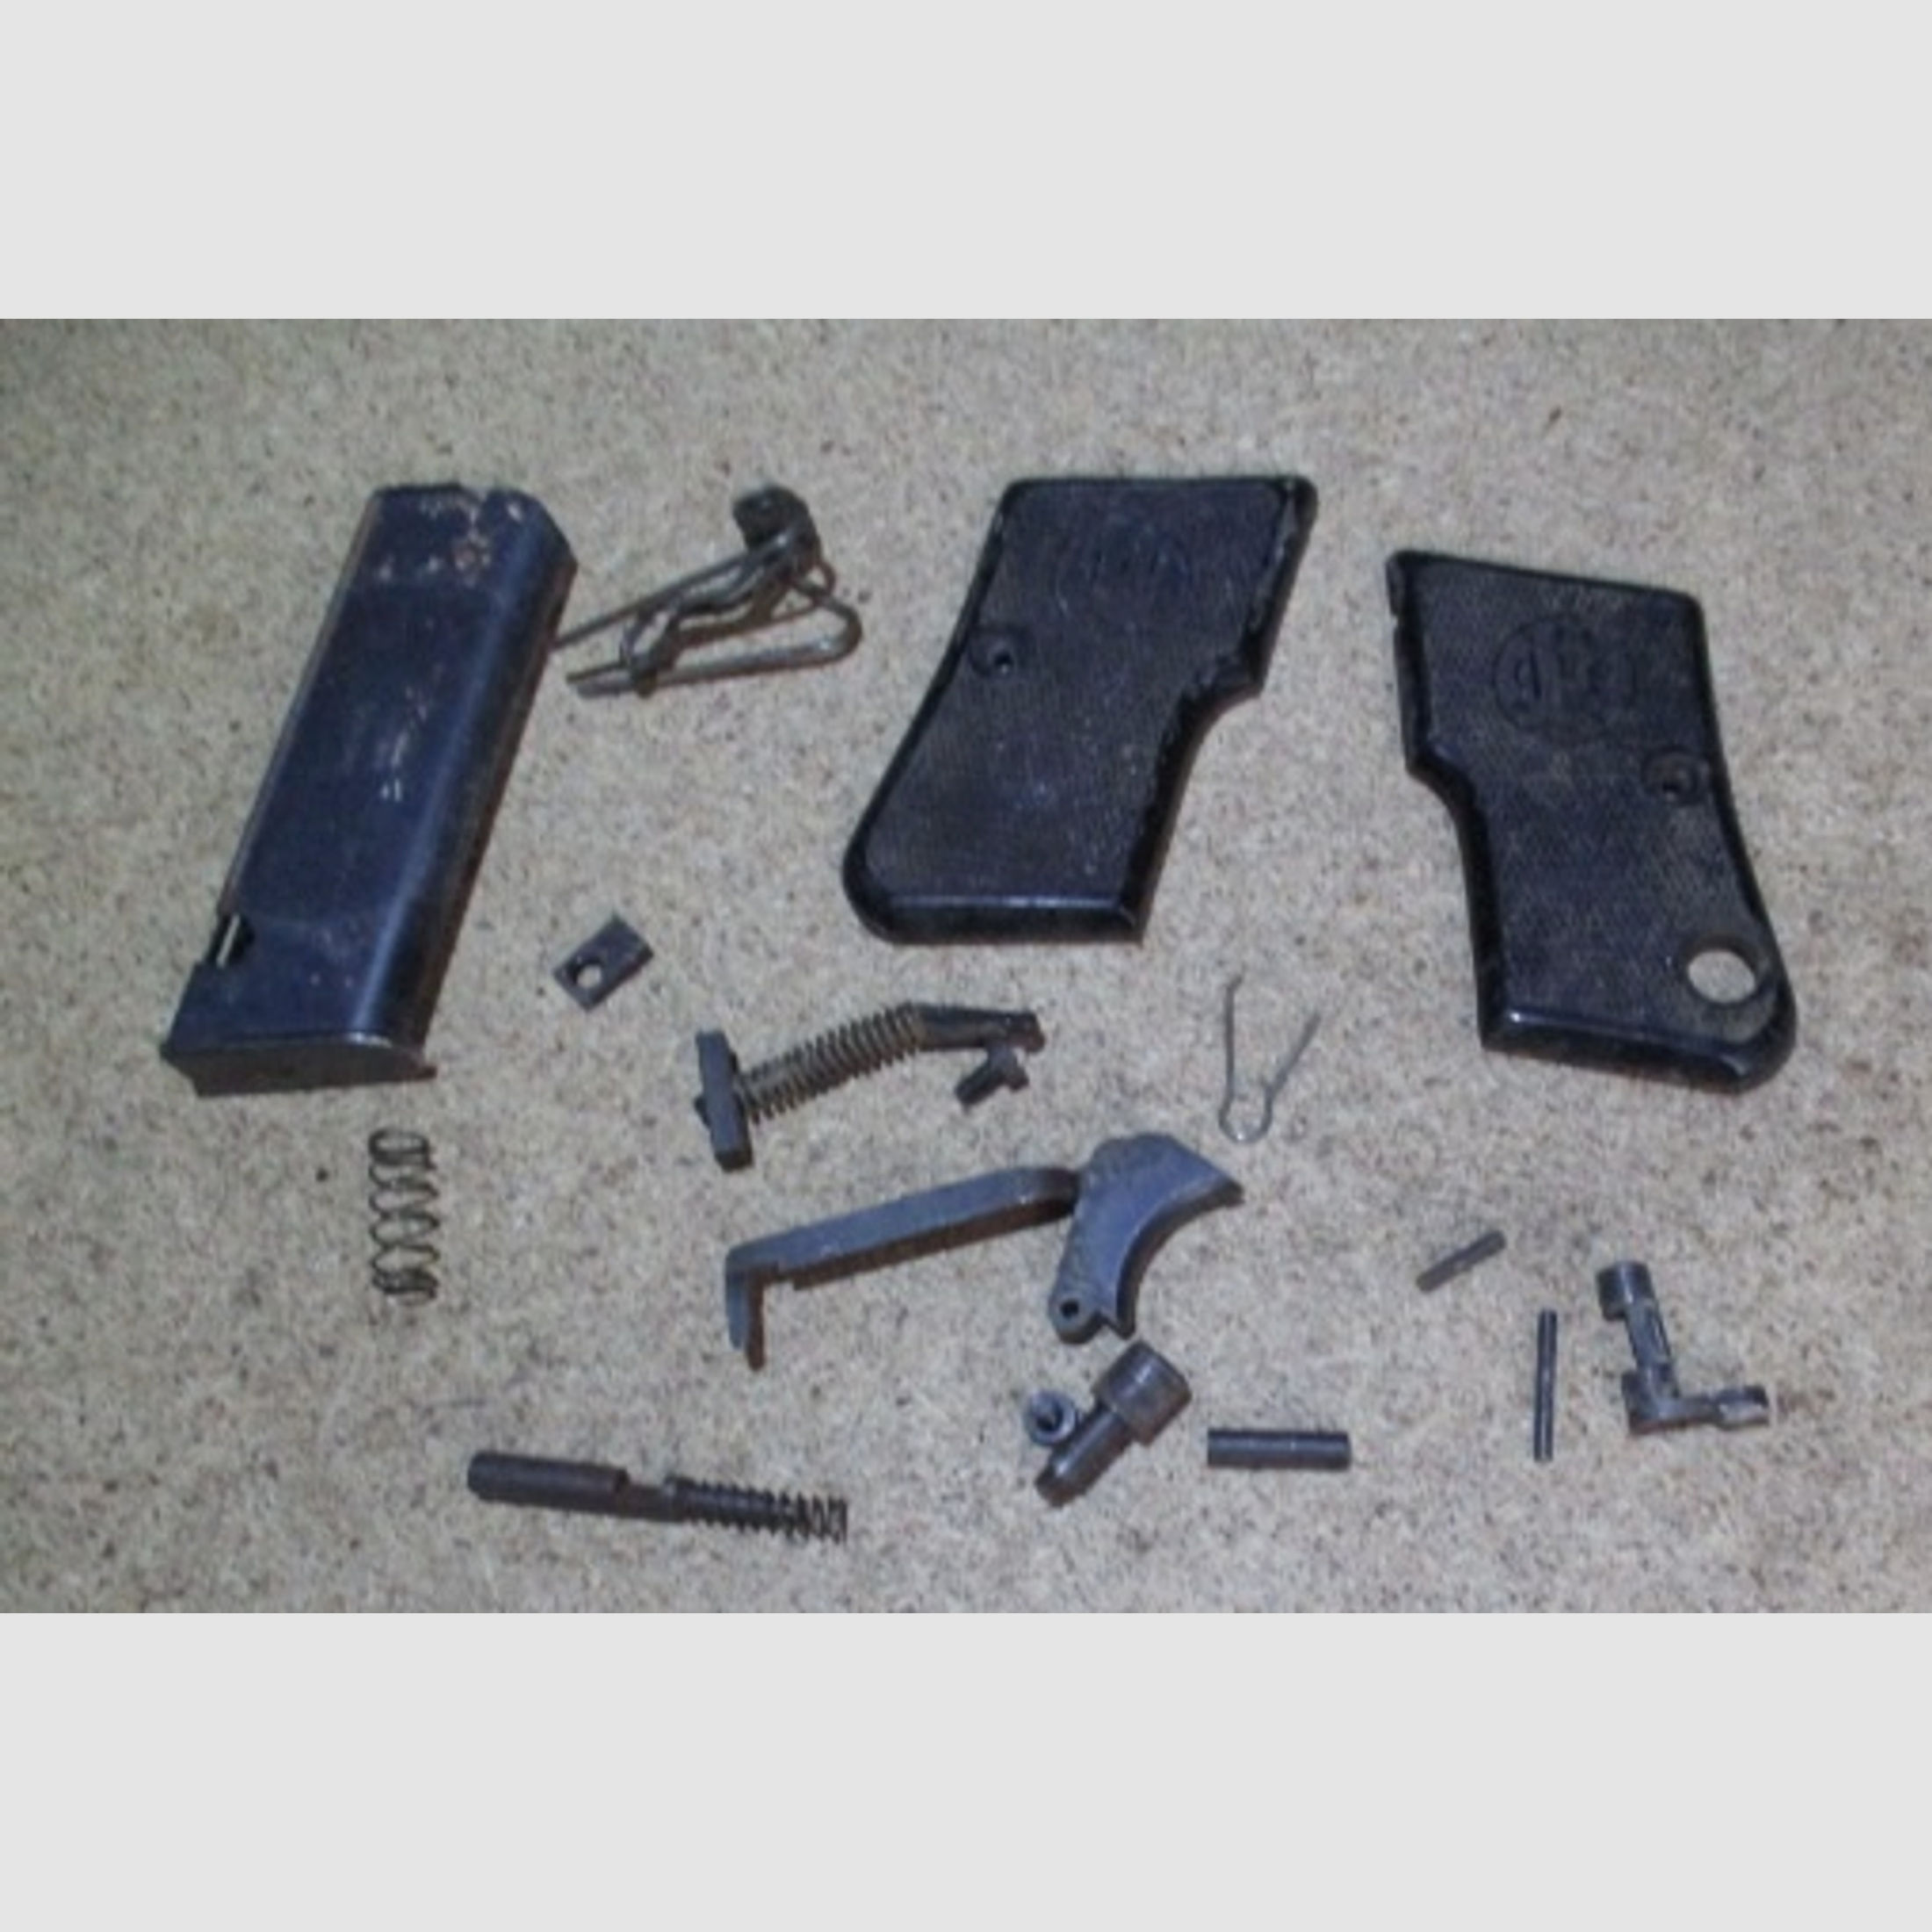 Ersatzteile Teilekit für Pistole Beretta 950 6,35mm